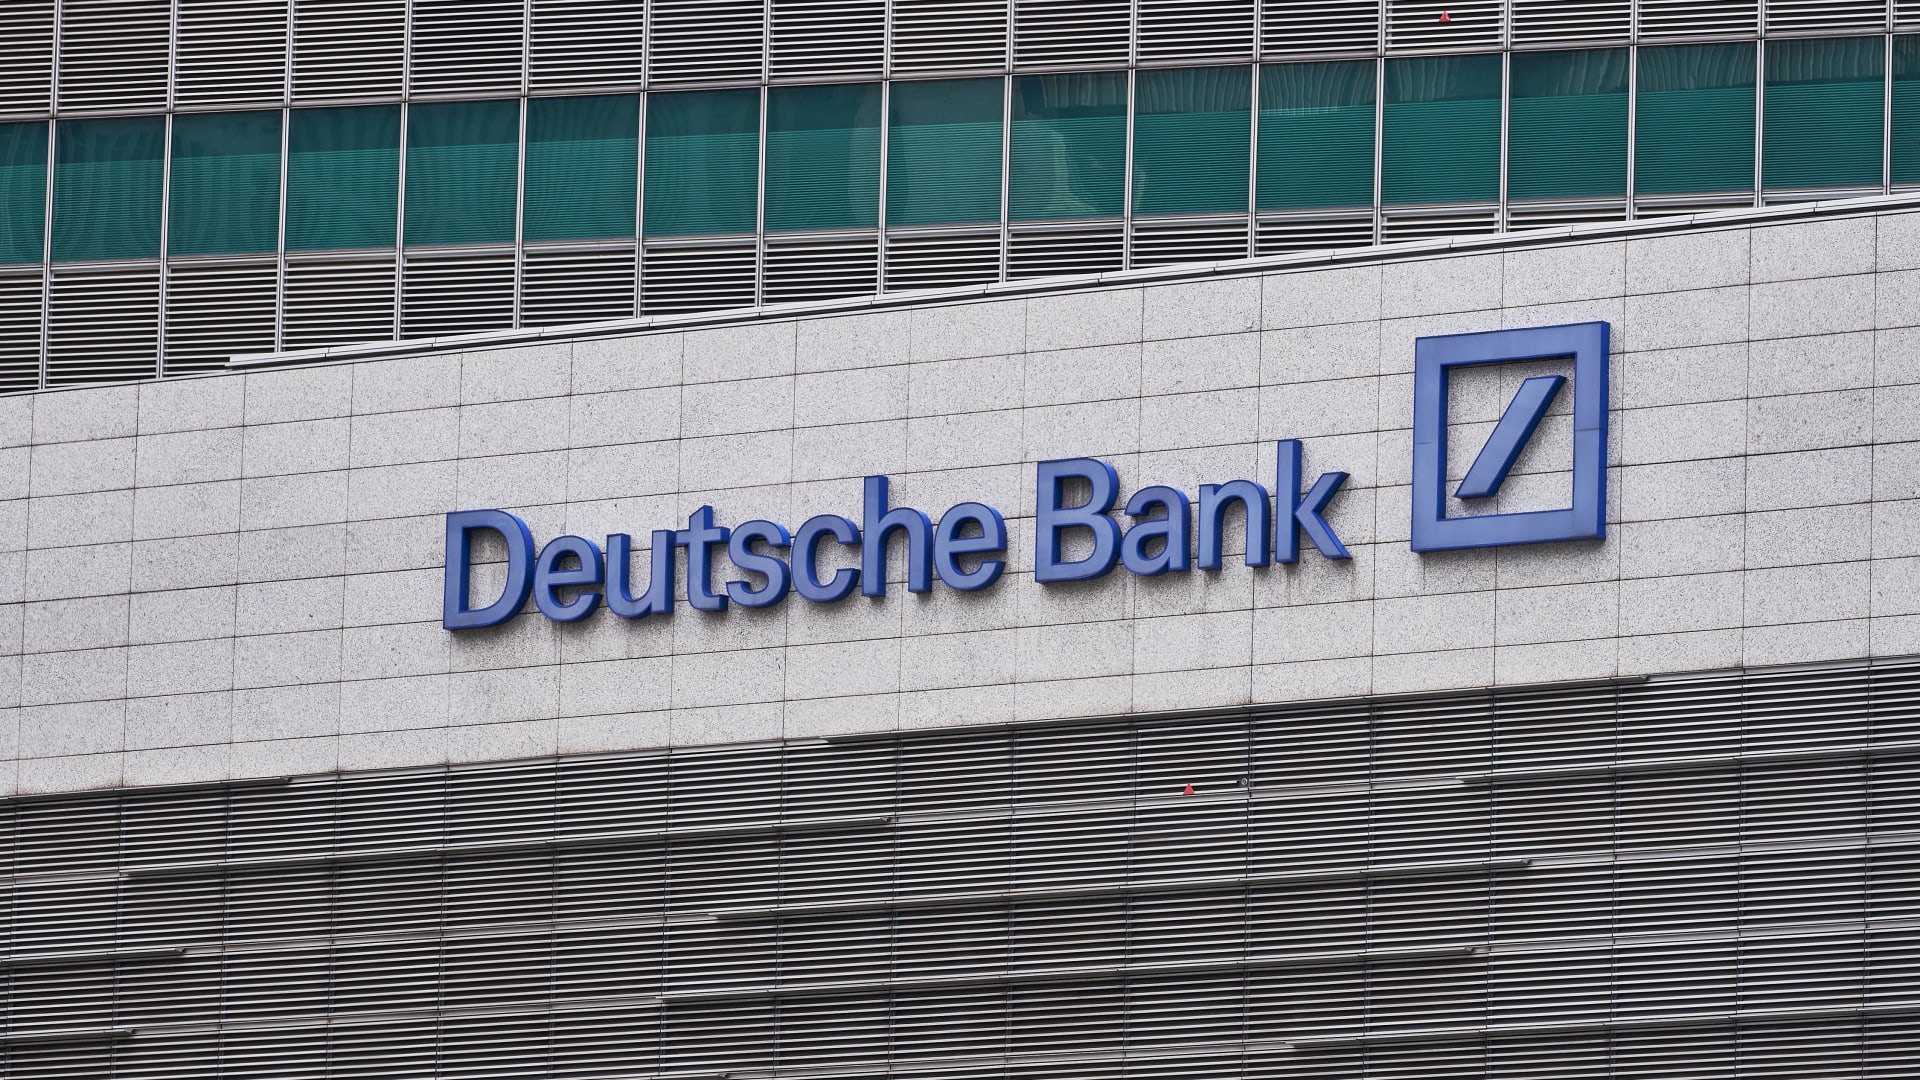 European stocks slide 1.2% after undisclosed investor sells stakes in German banks; Deutsche Bank tanks 9.5%